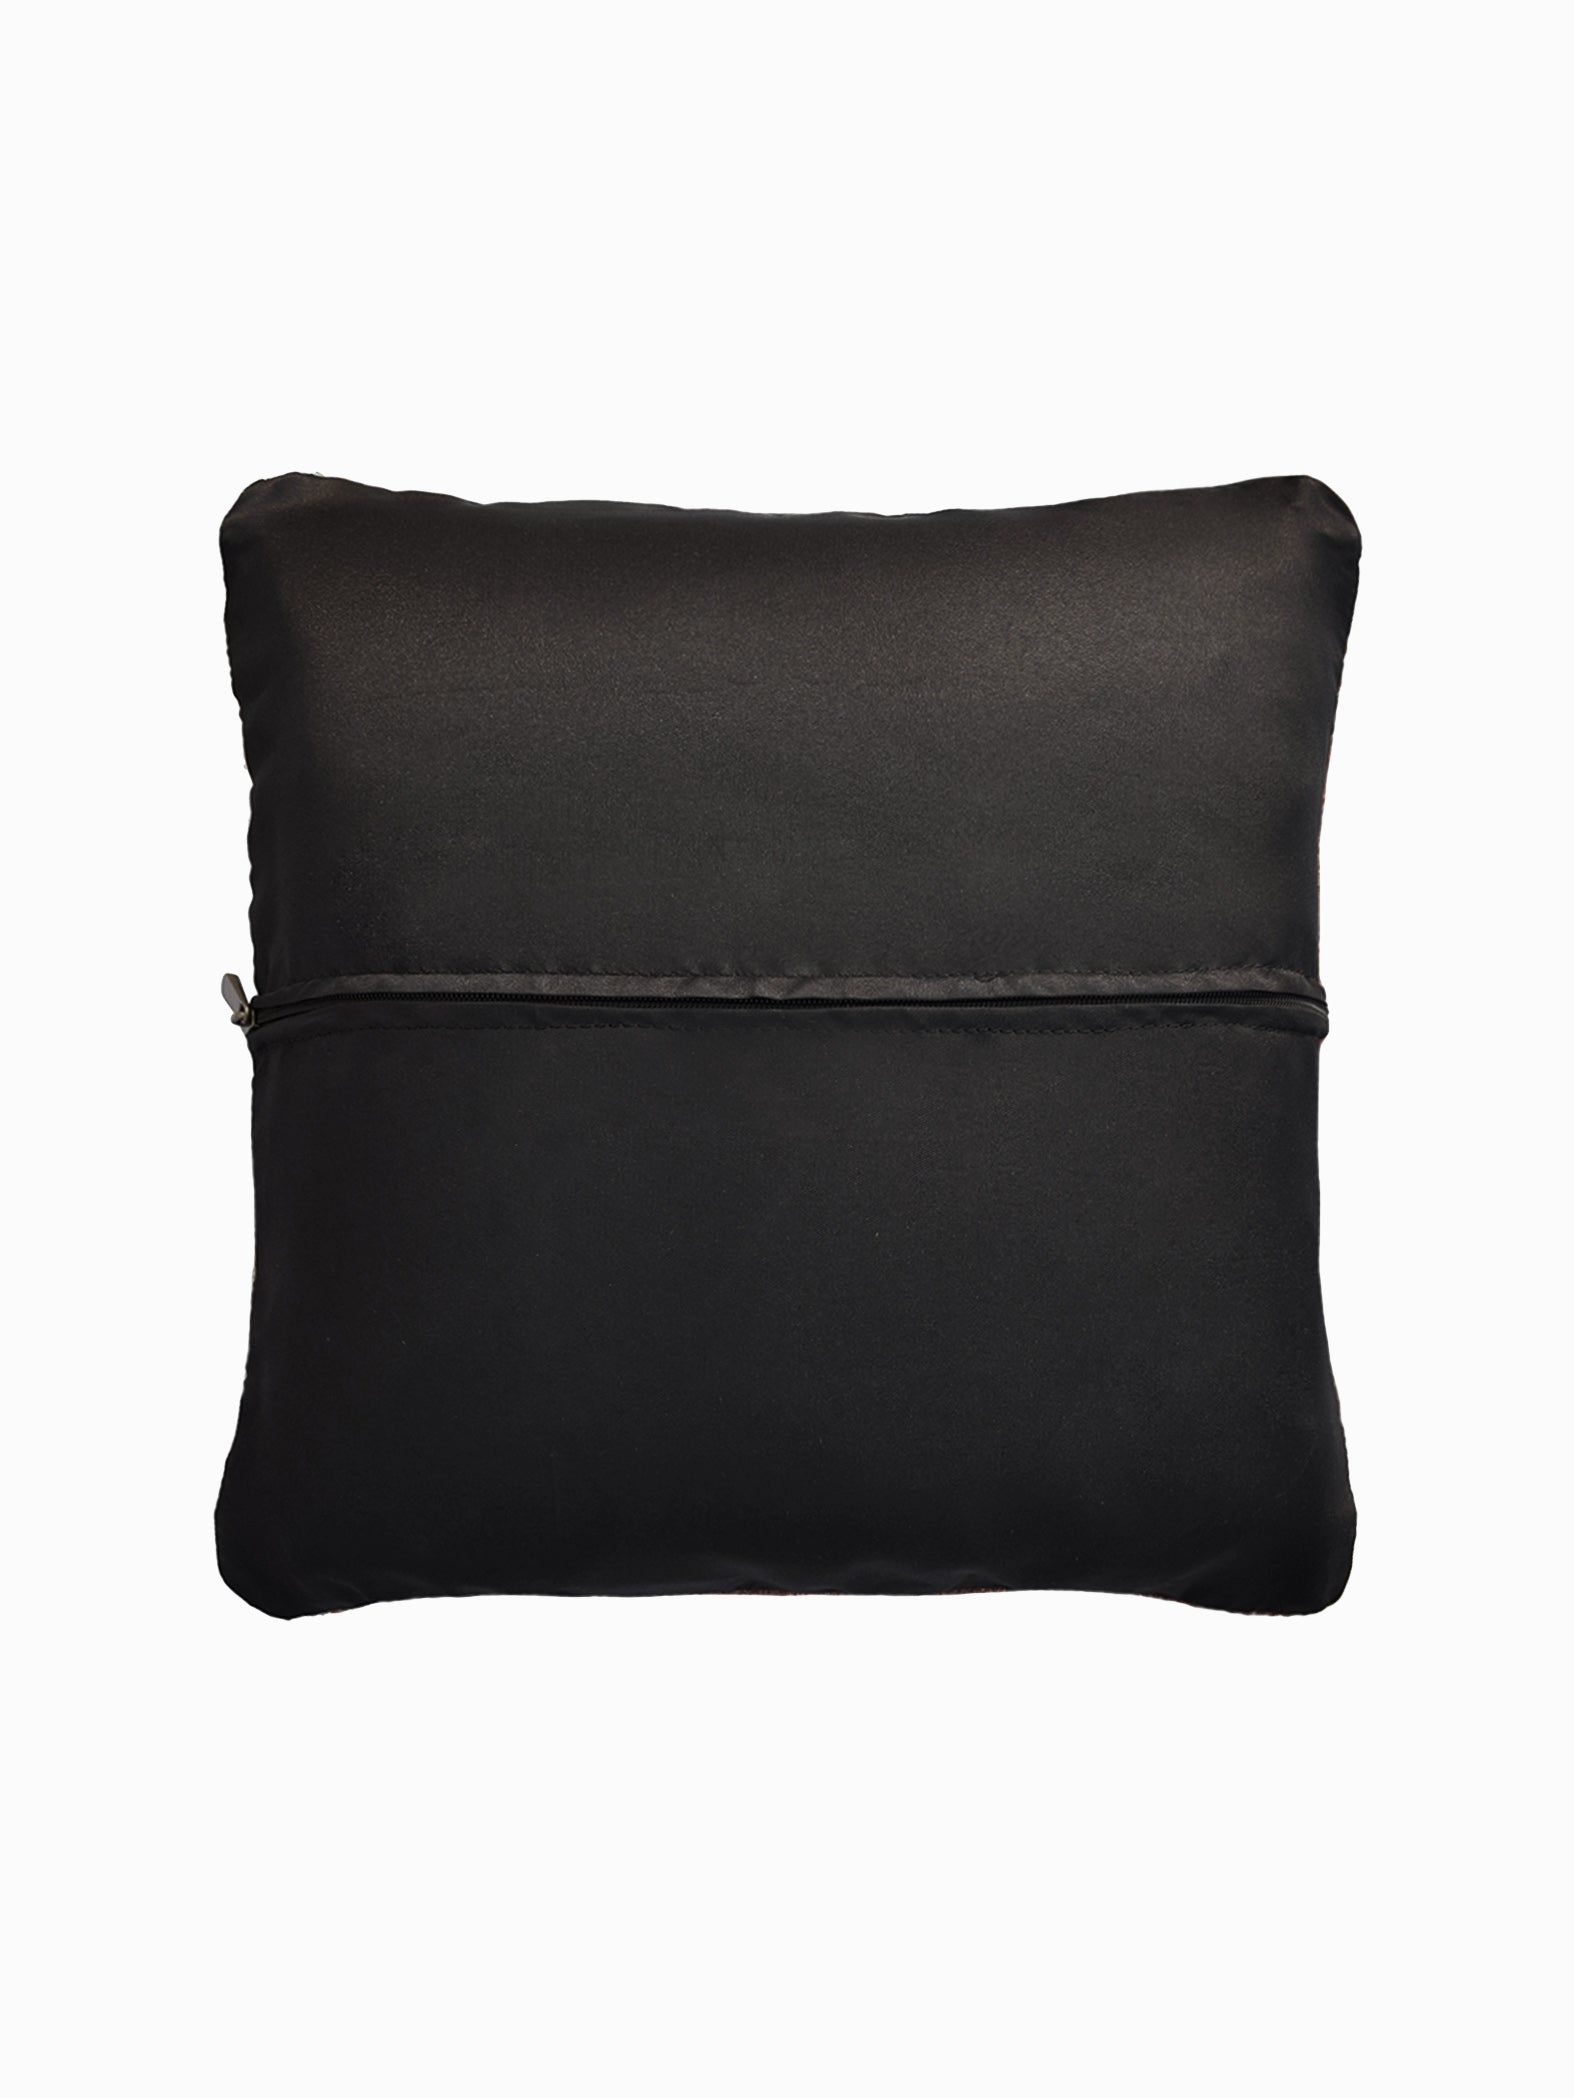 Scarlet & Navy Kilim Cushion Cover